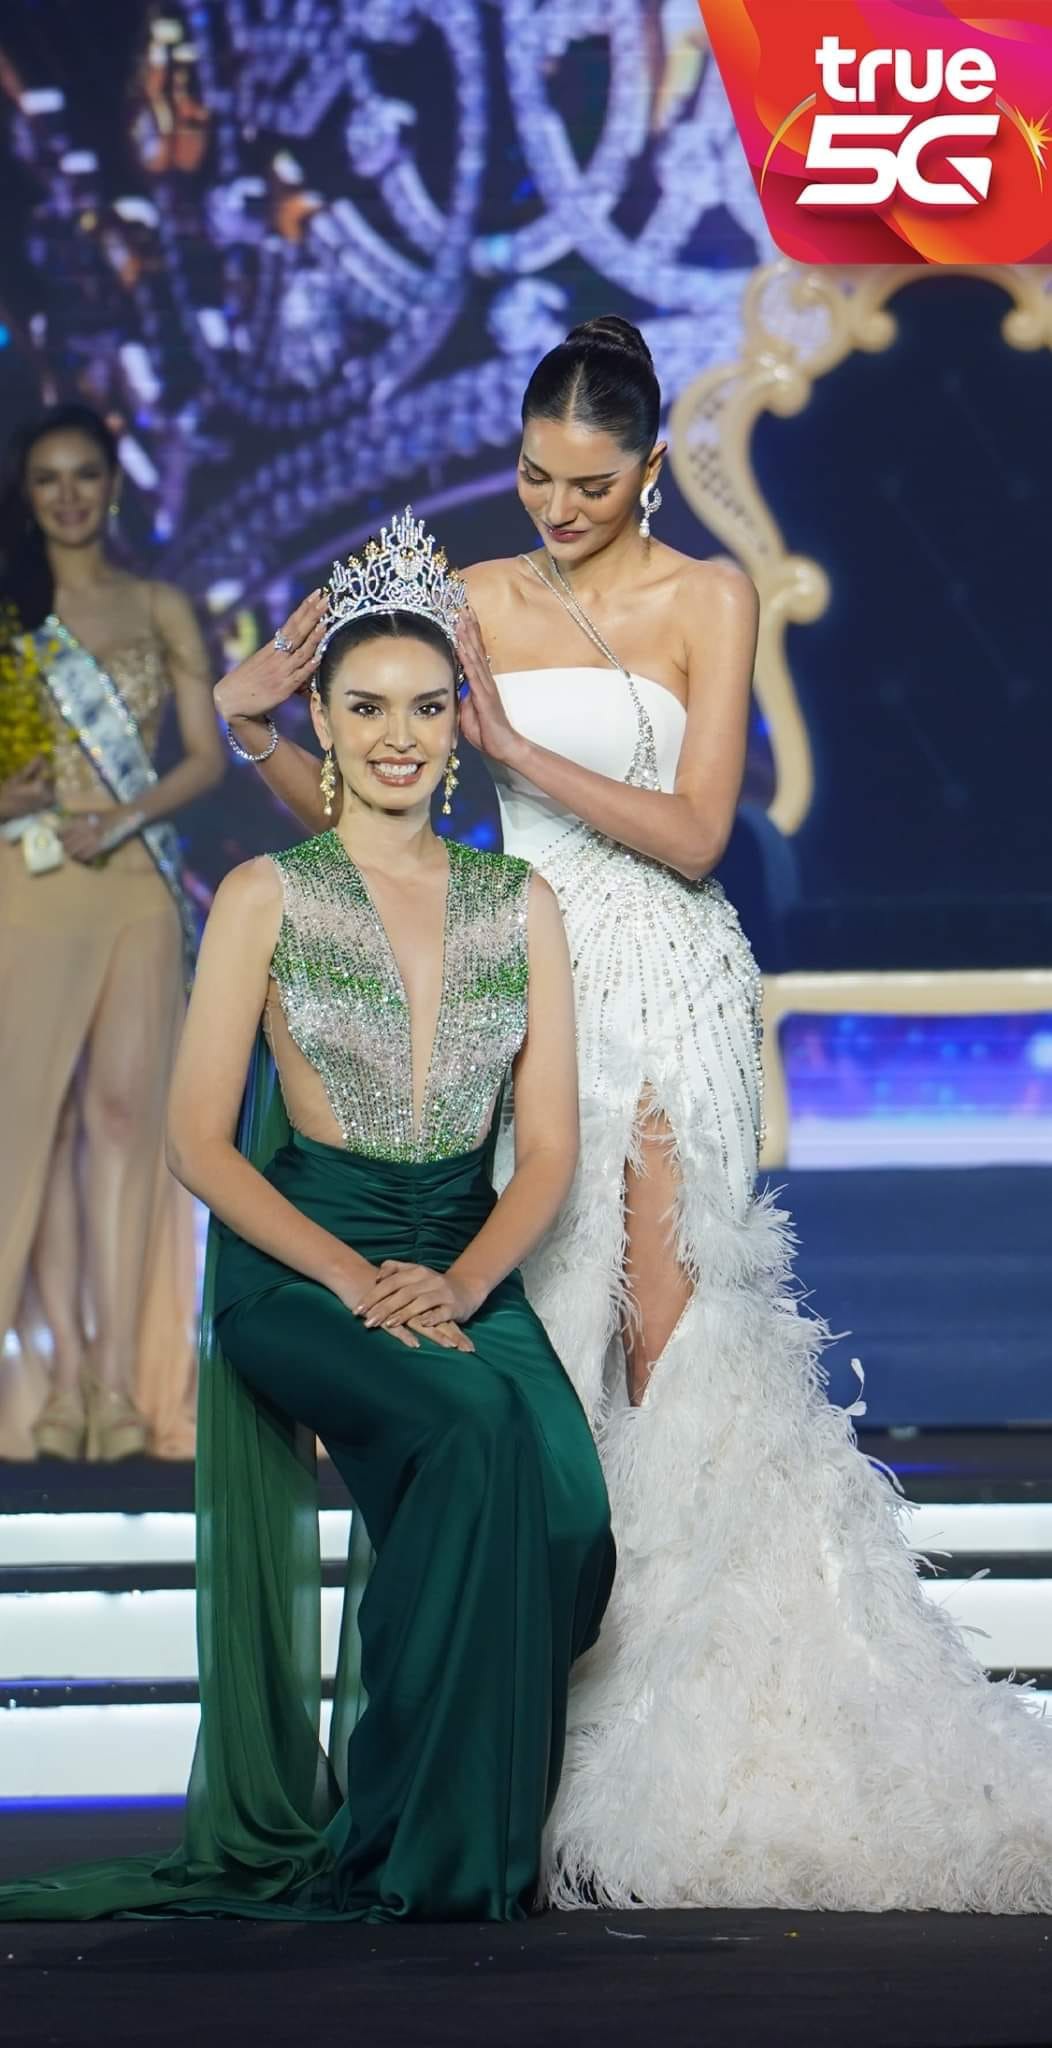 Vẻ đẹp lai cuốn hút của mỹ nhân giành ngôi vị Hoa hậu Thái Lan 2022 - Ảnh 2.